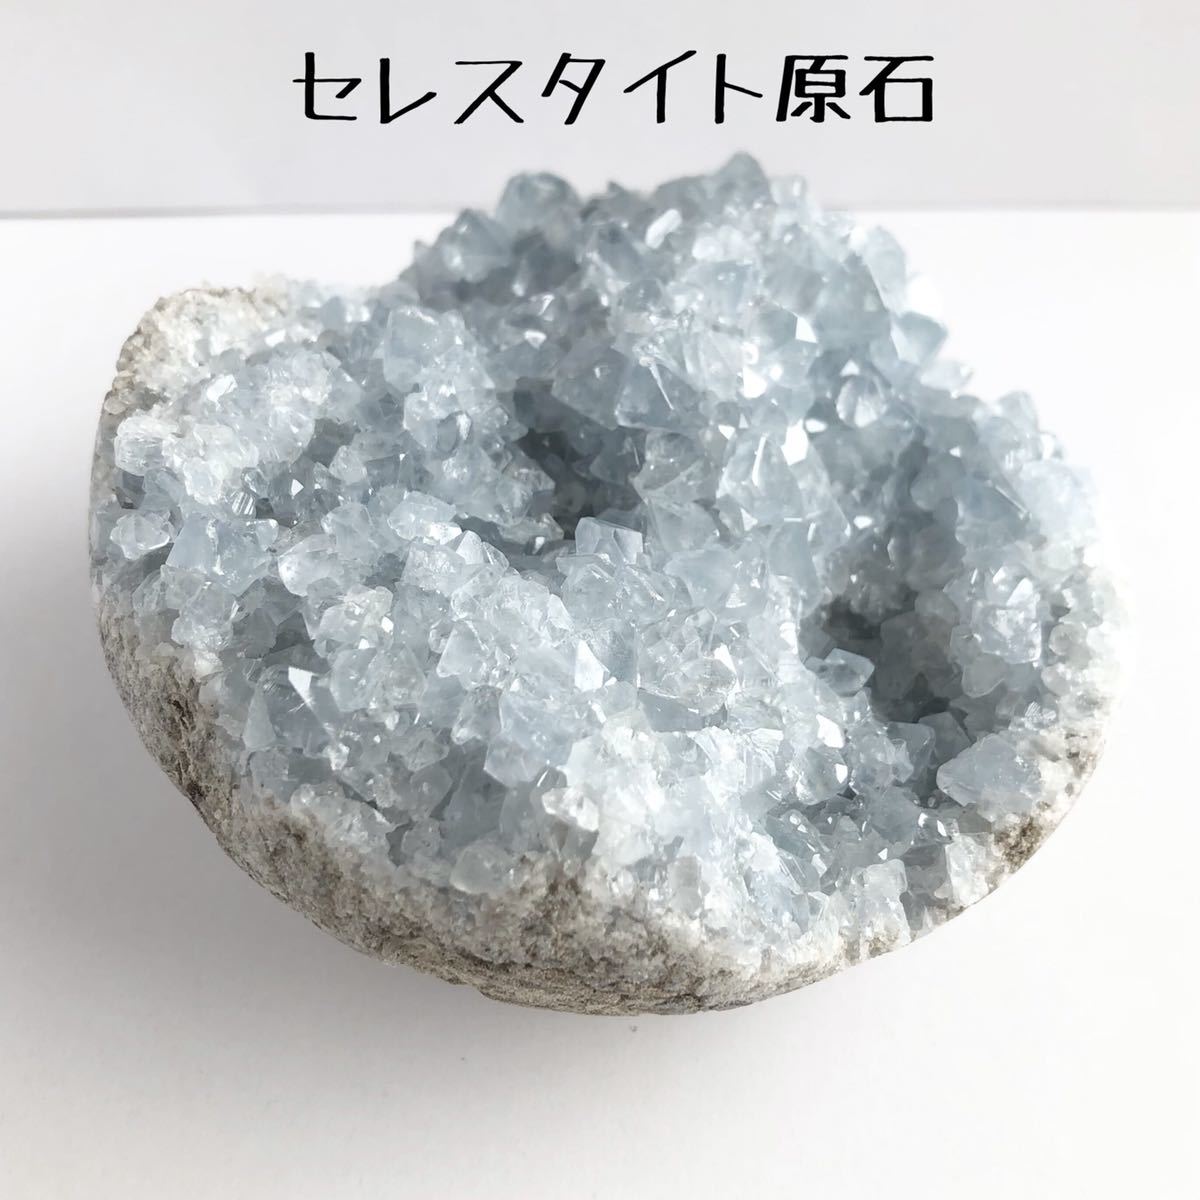 からの 水晶 自然石 誕生石 宝石 鉱物の通販 by ストーンヘンジ's shop 